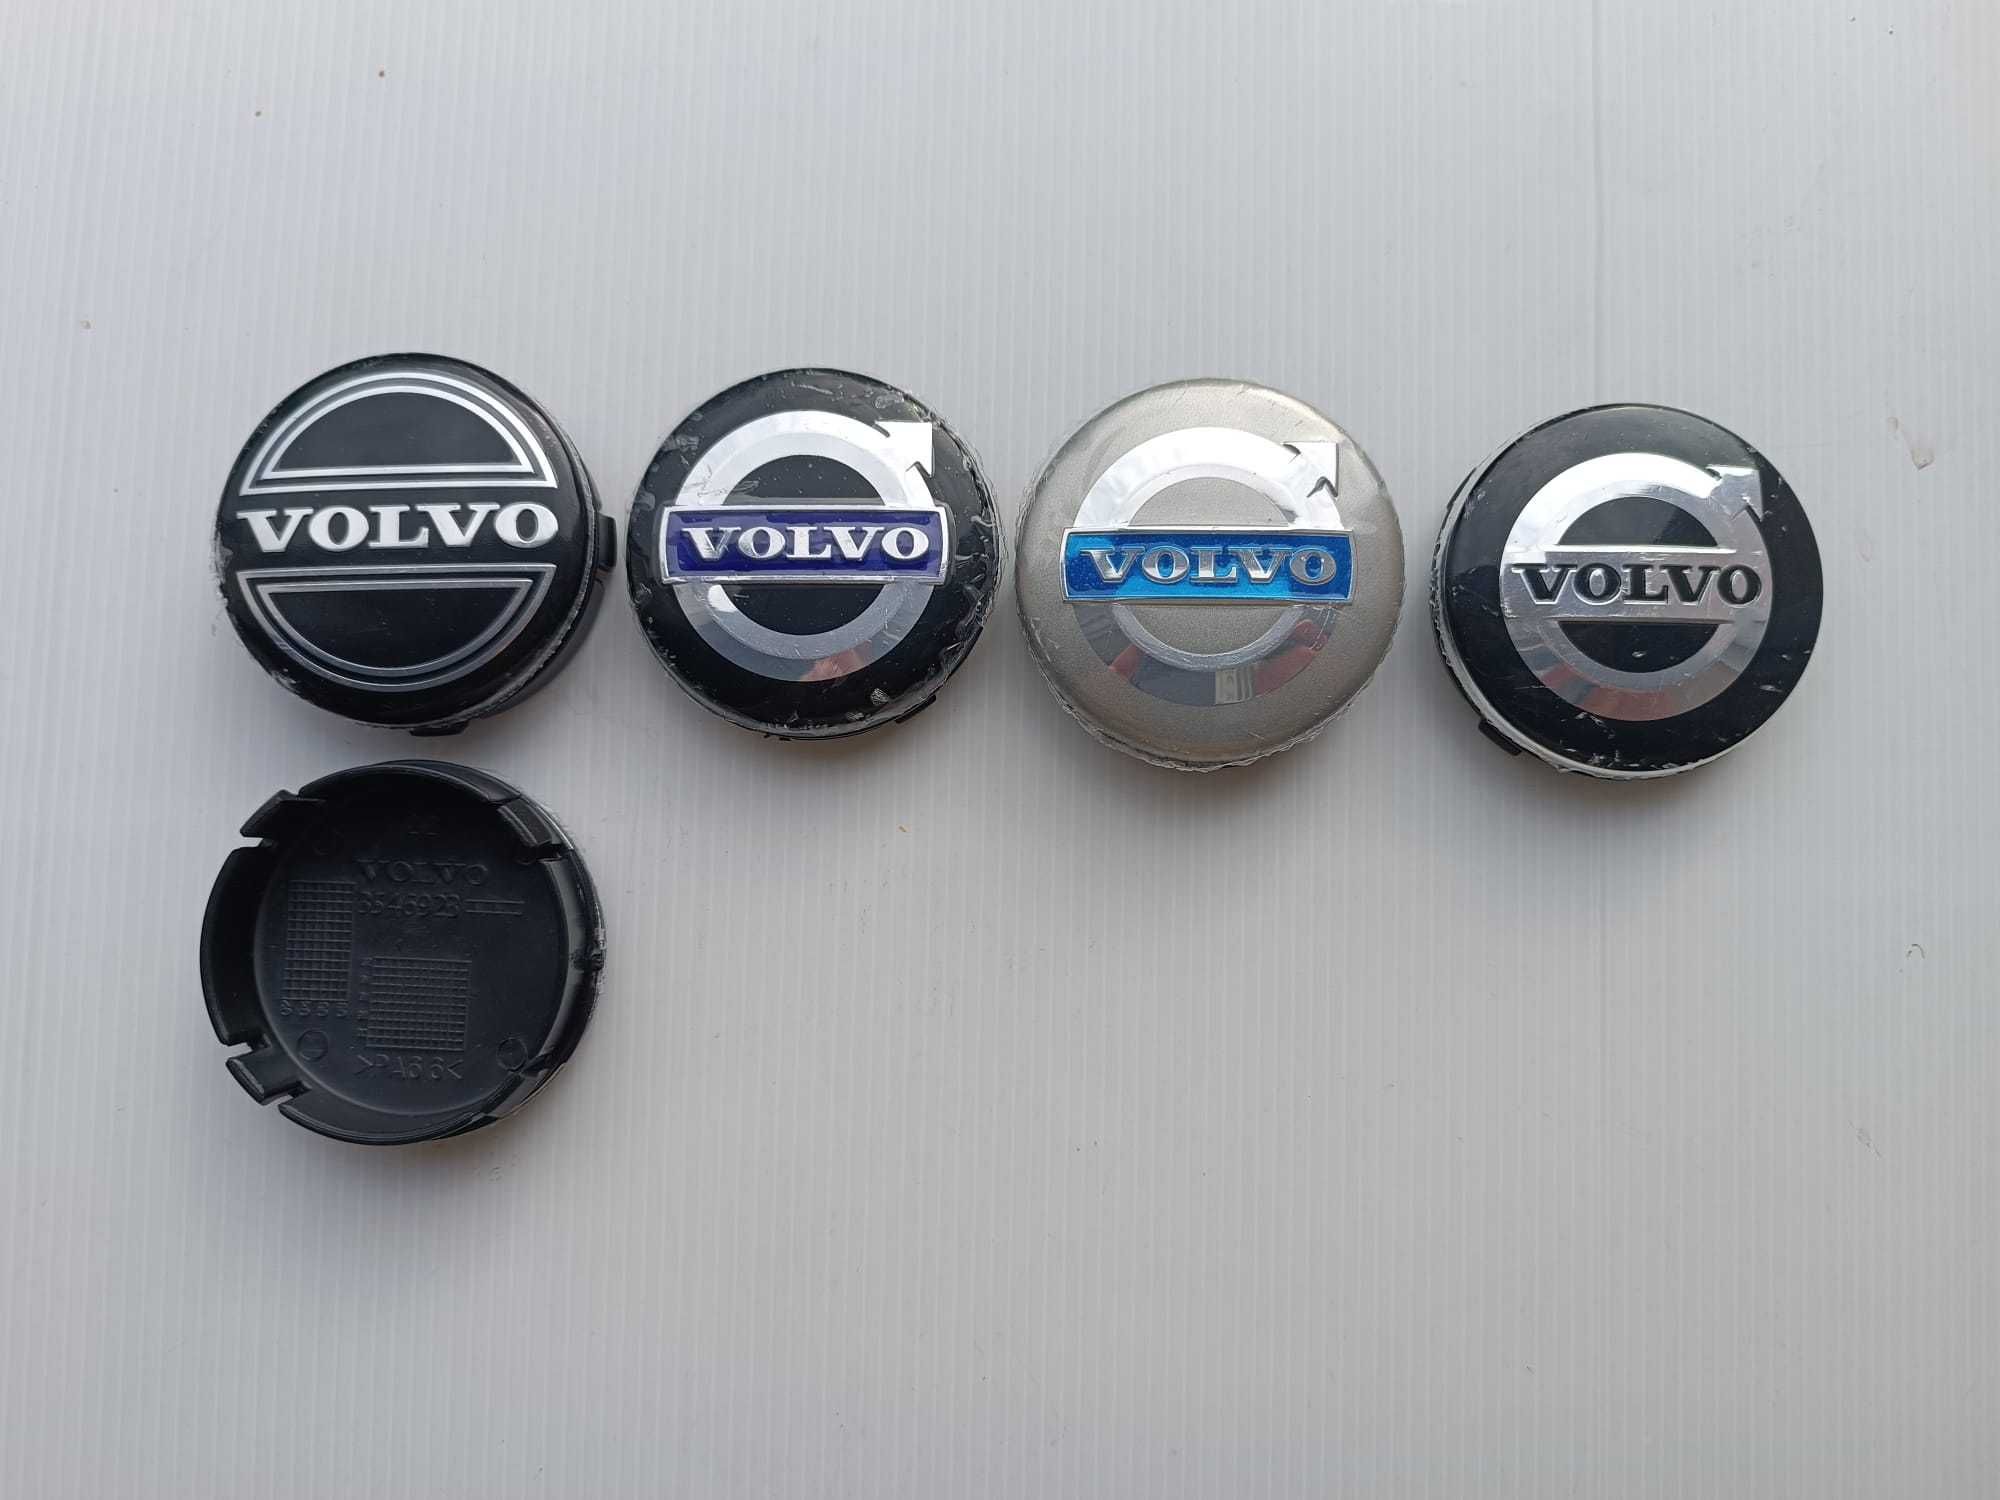 Centros/tampas de jante completos Volvo com 56, 60, 64 e 68 mm